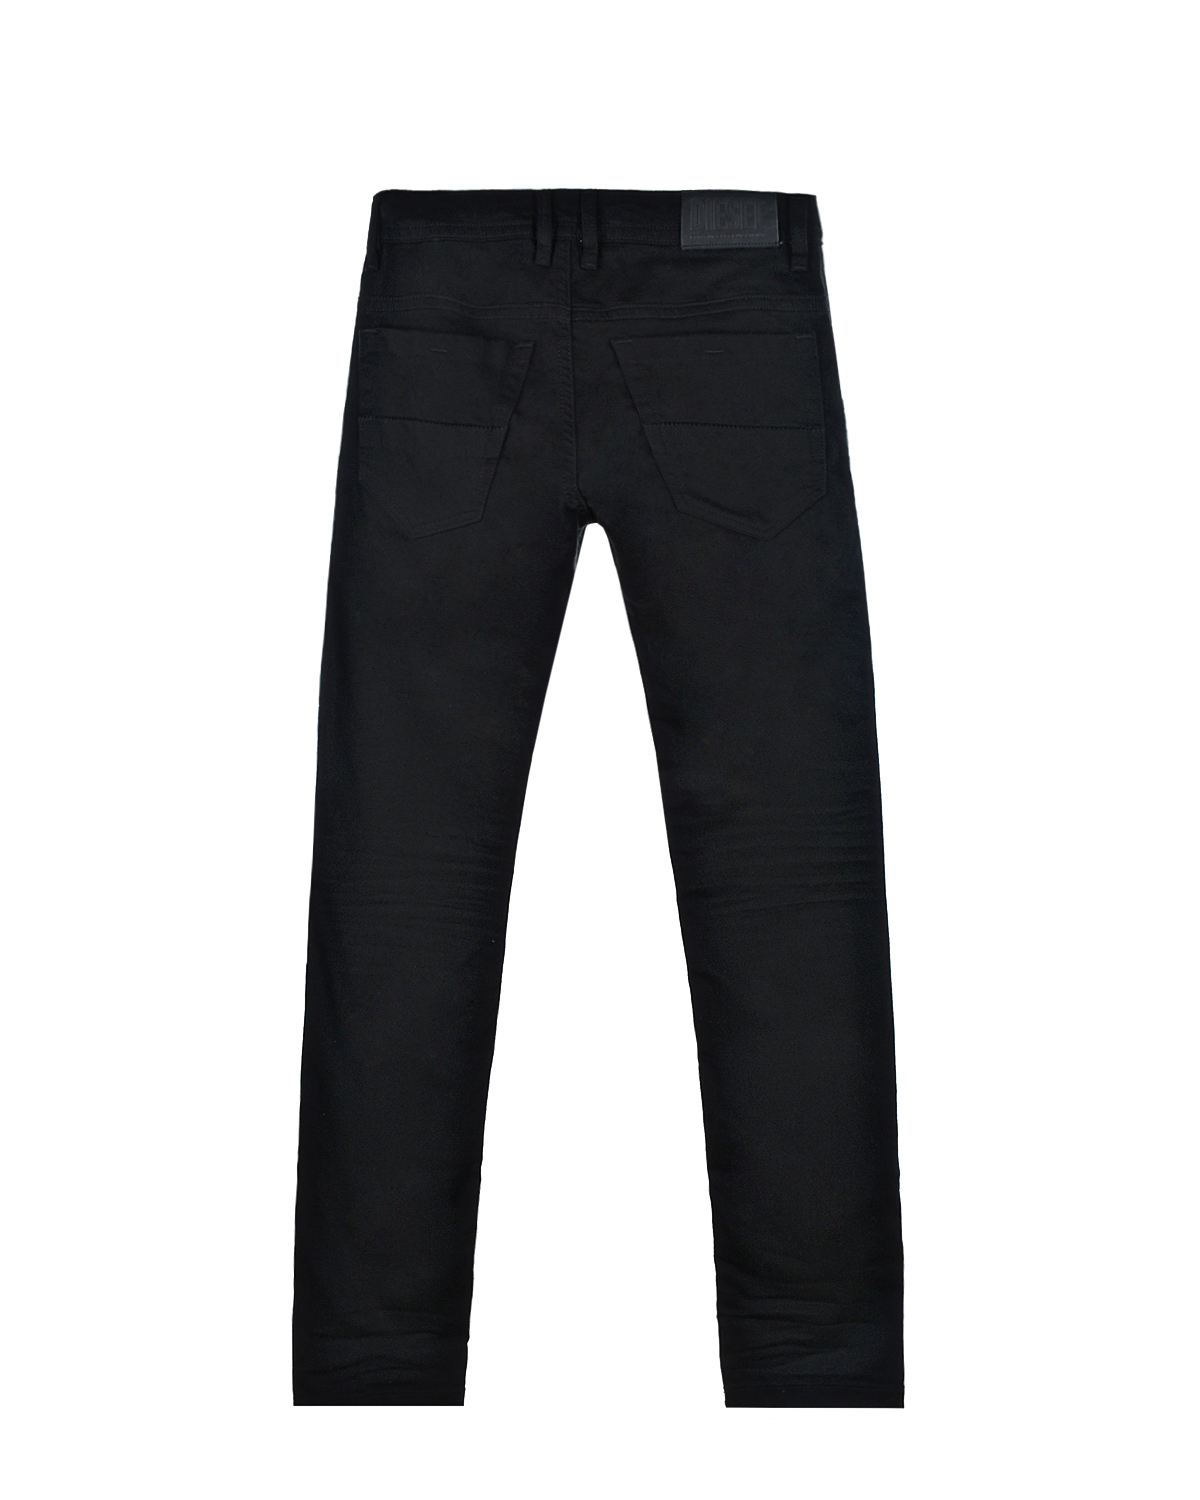 Узкие джинсы для мальчиков Diesel детские, размер 116, цвет черный - фото 3